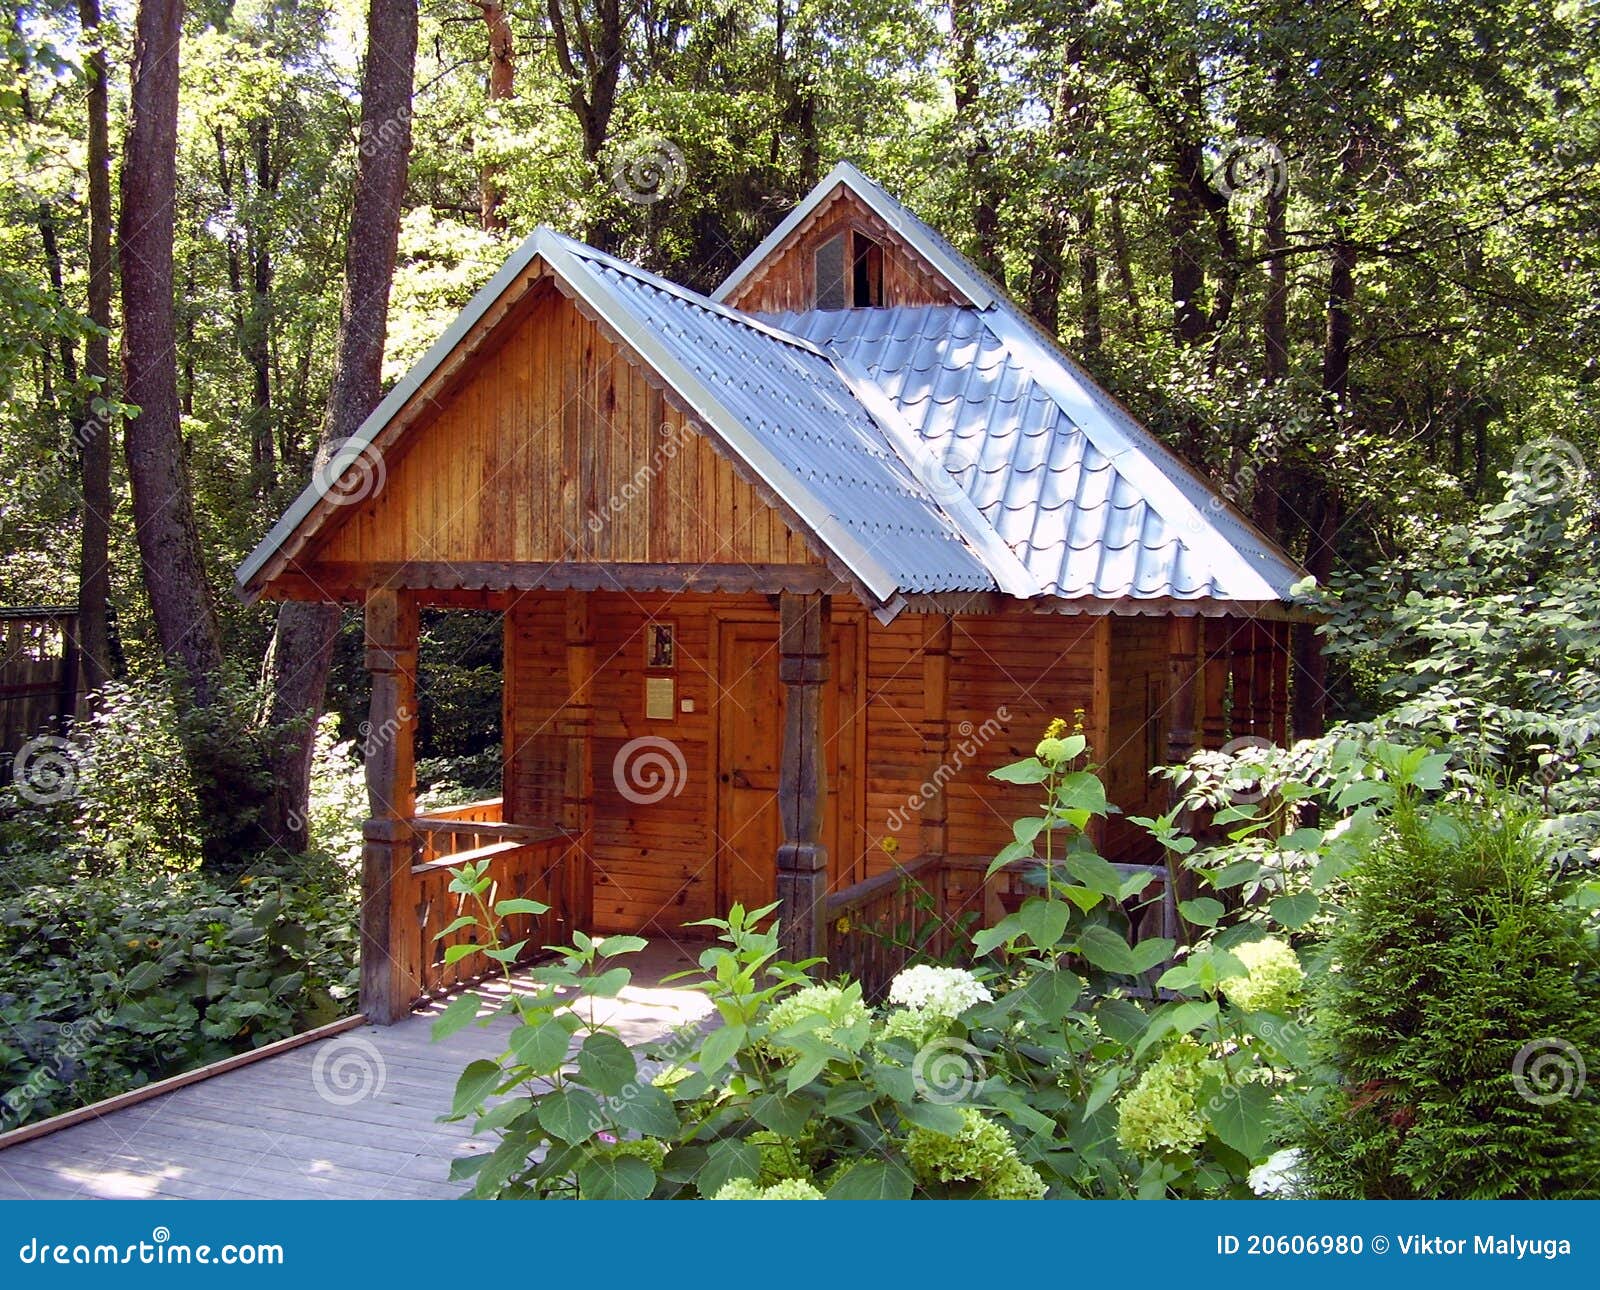 小木屋,木房子的图片-千叶网